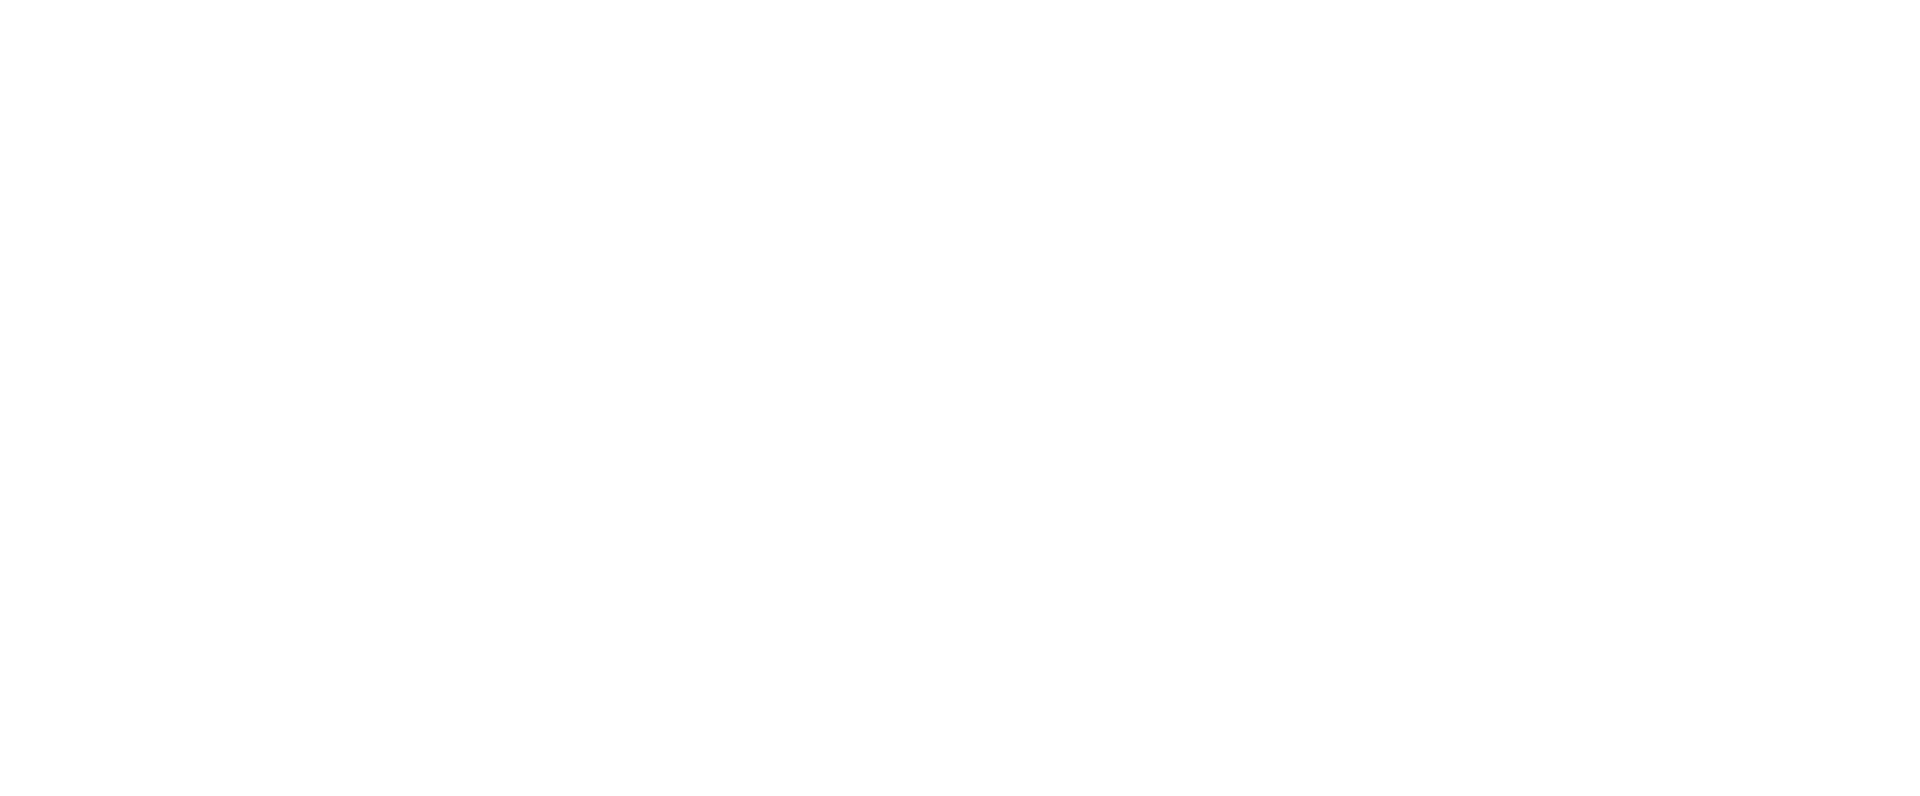 gaming-logo.png